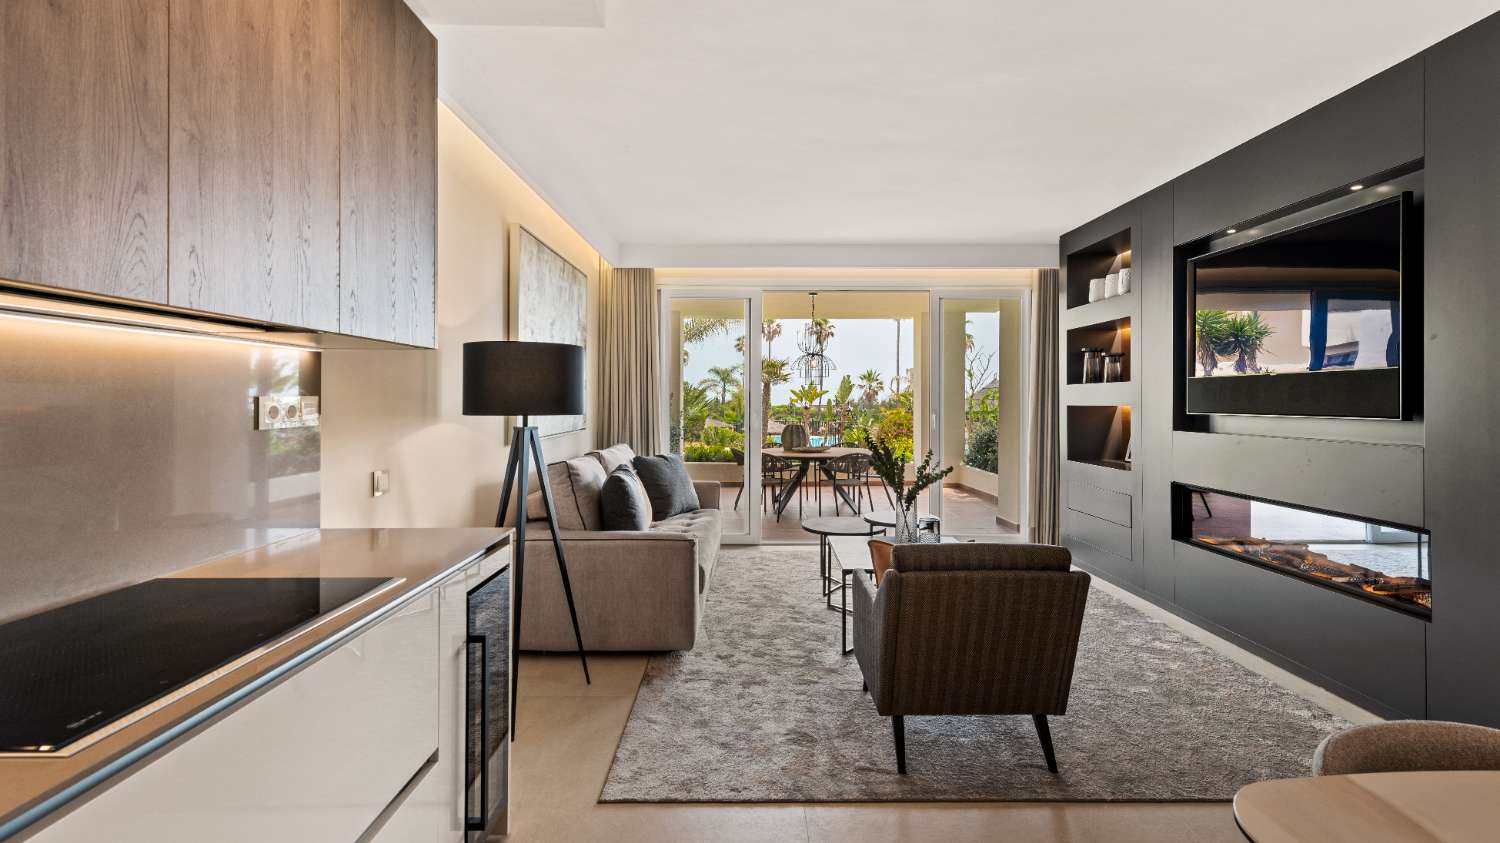 Apartamento en primera línea de playa, orientación sur, vistas al mar en planta baja de 4 dormitorios totalmente renovado en Bahía del Velerin.